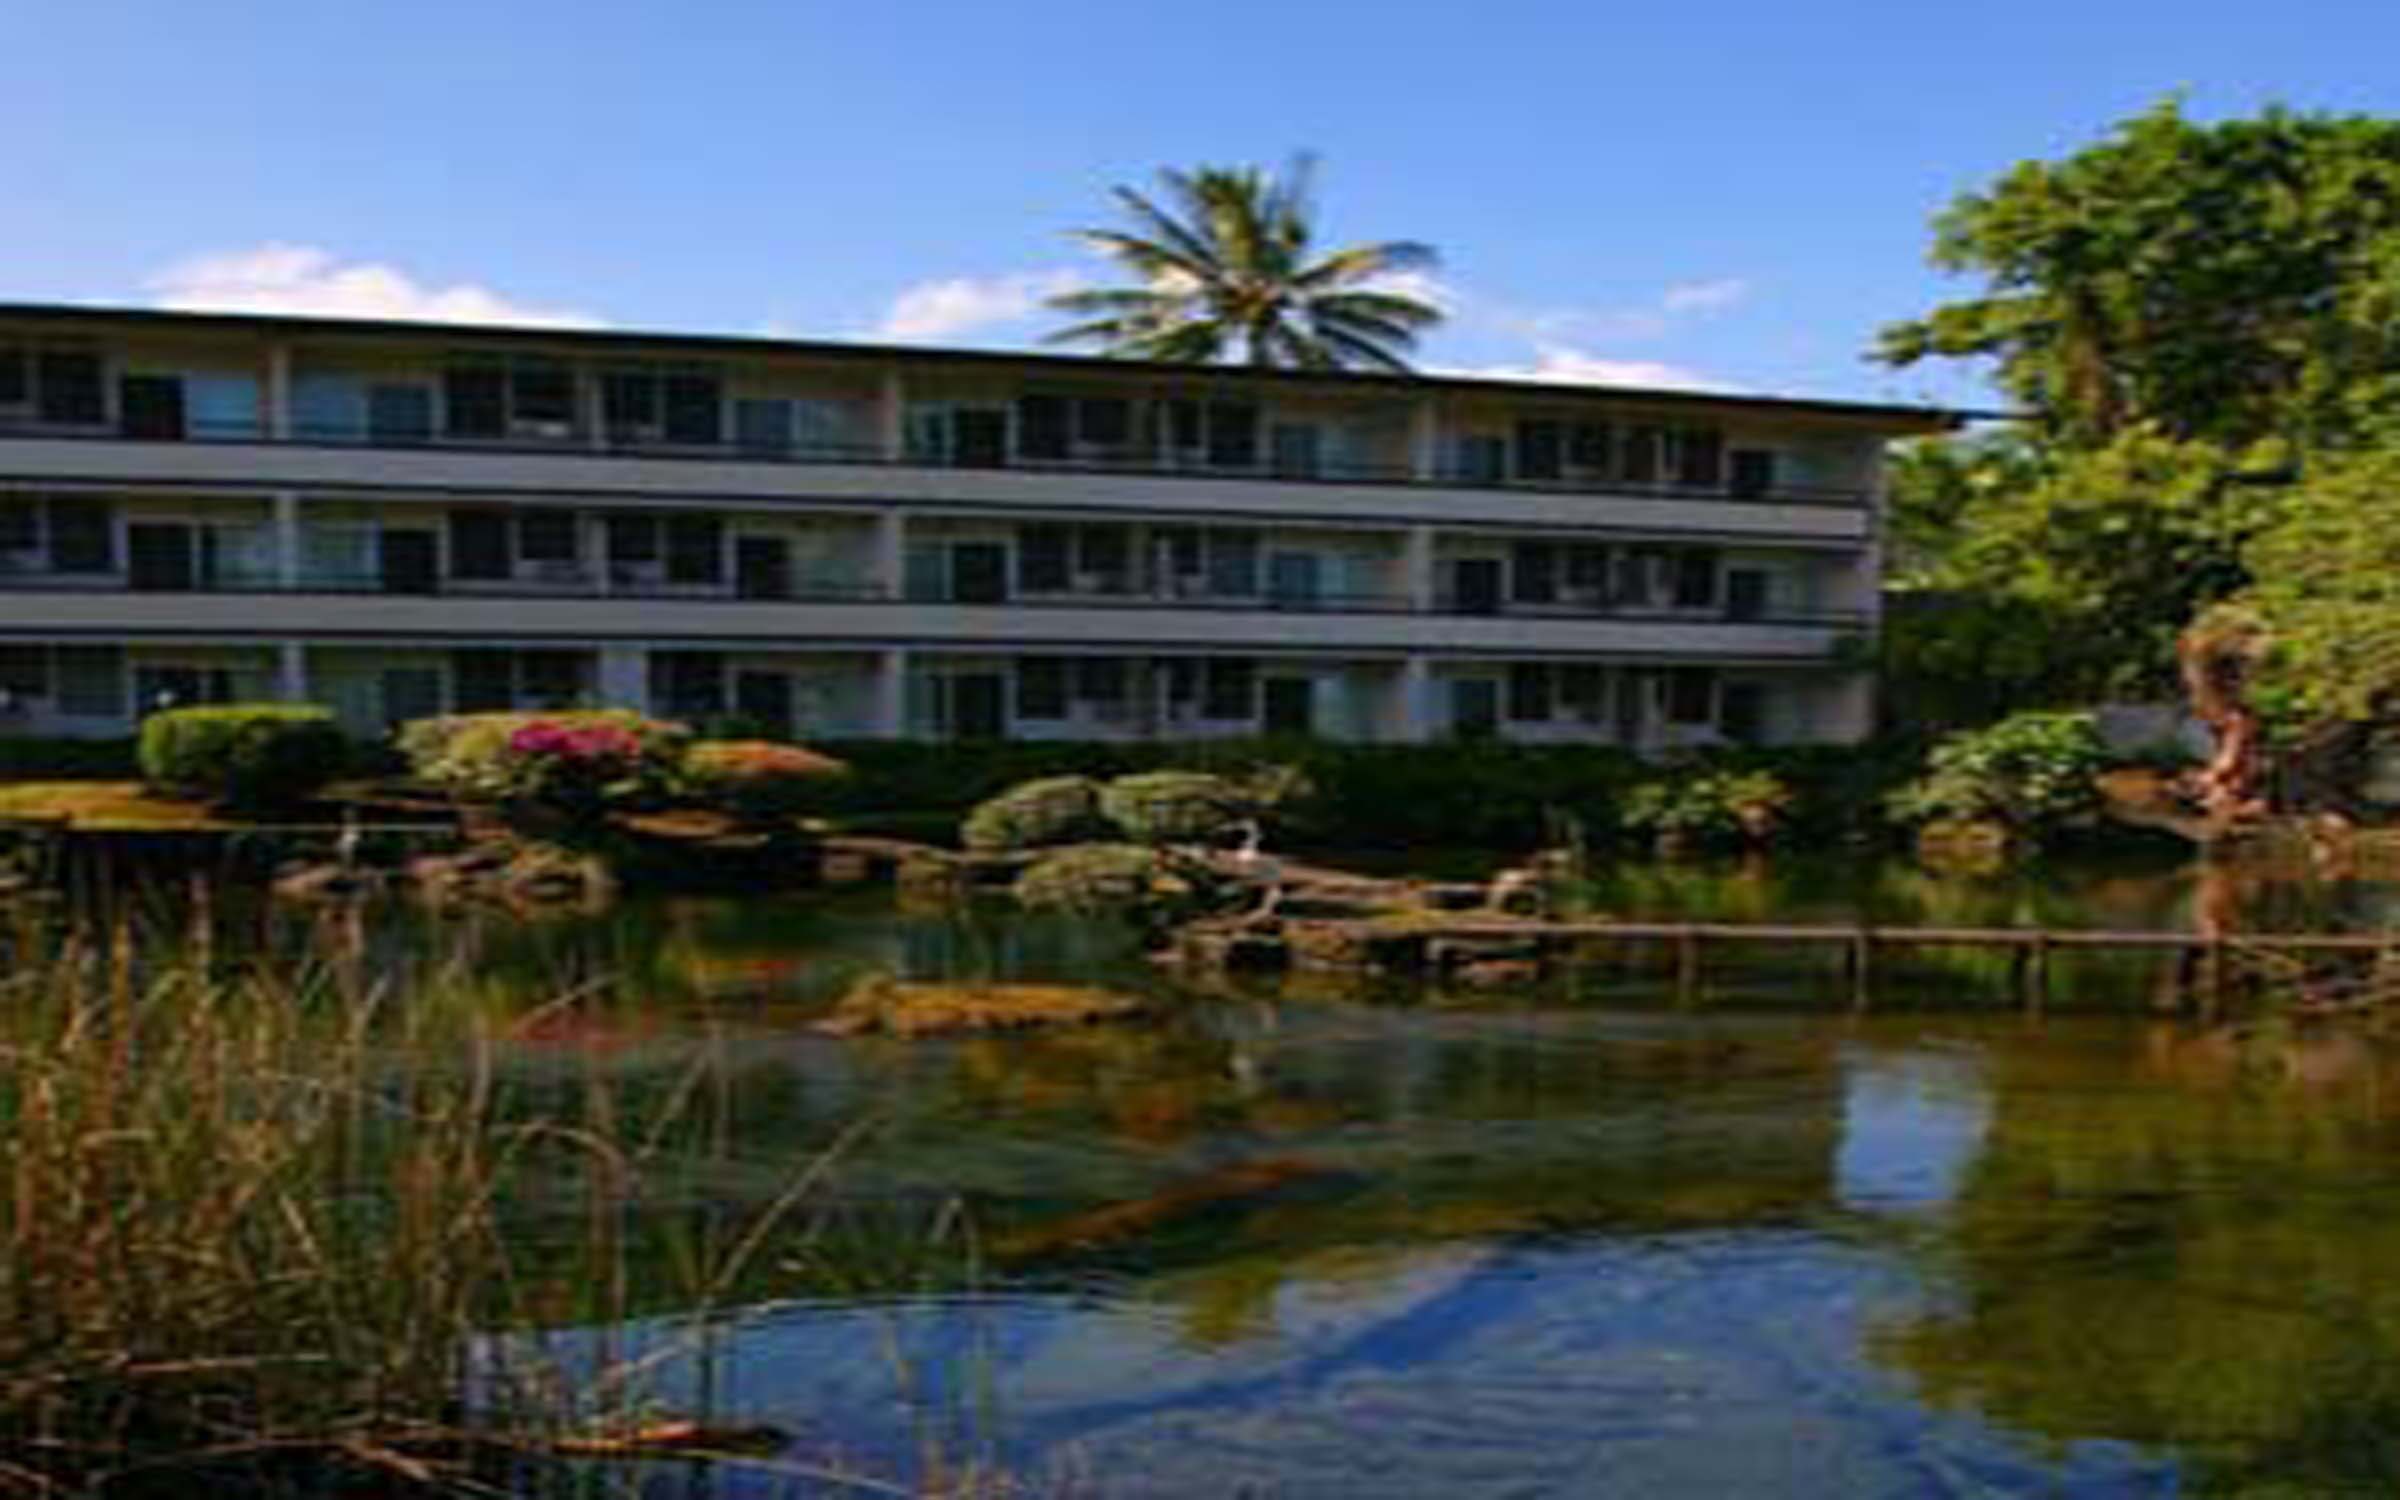 Hilo Seaside Hotel